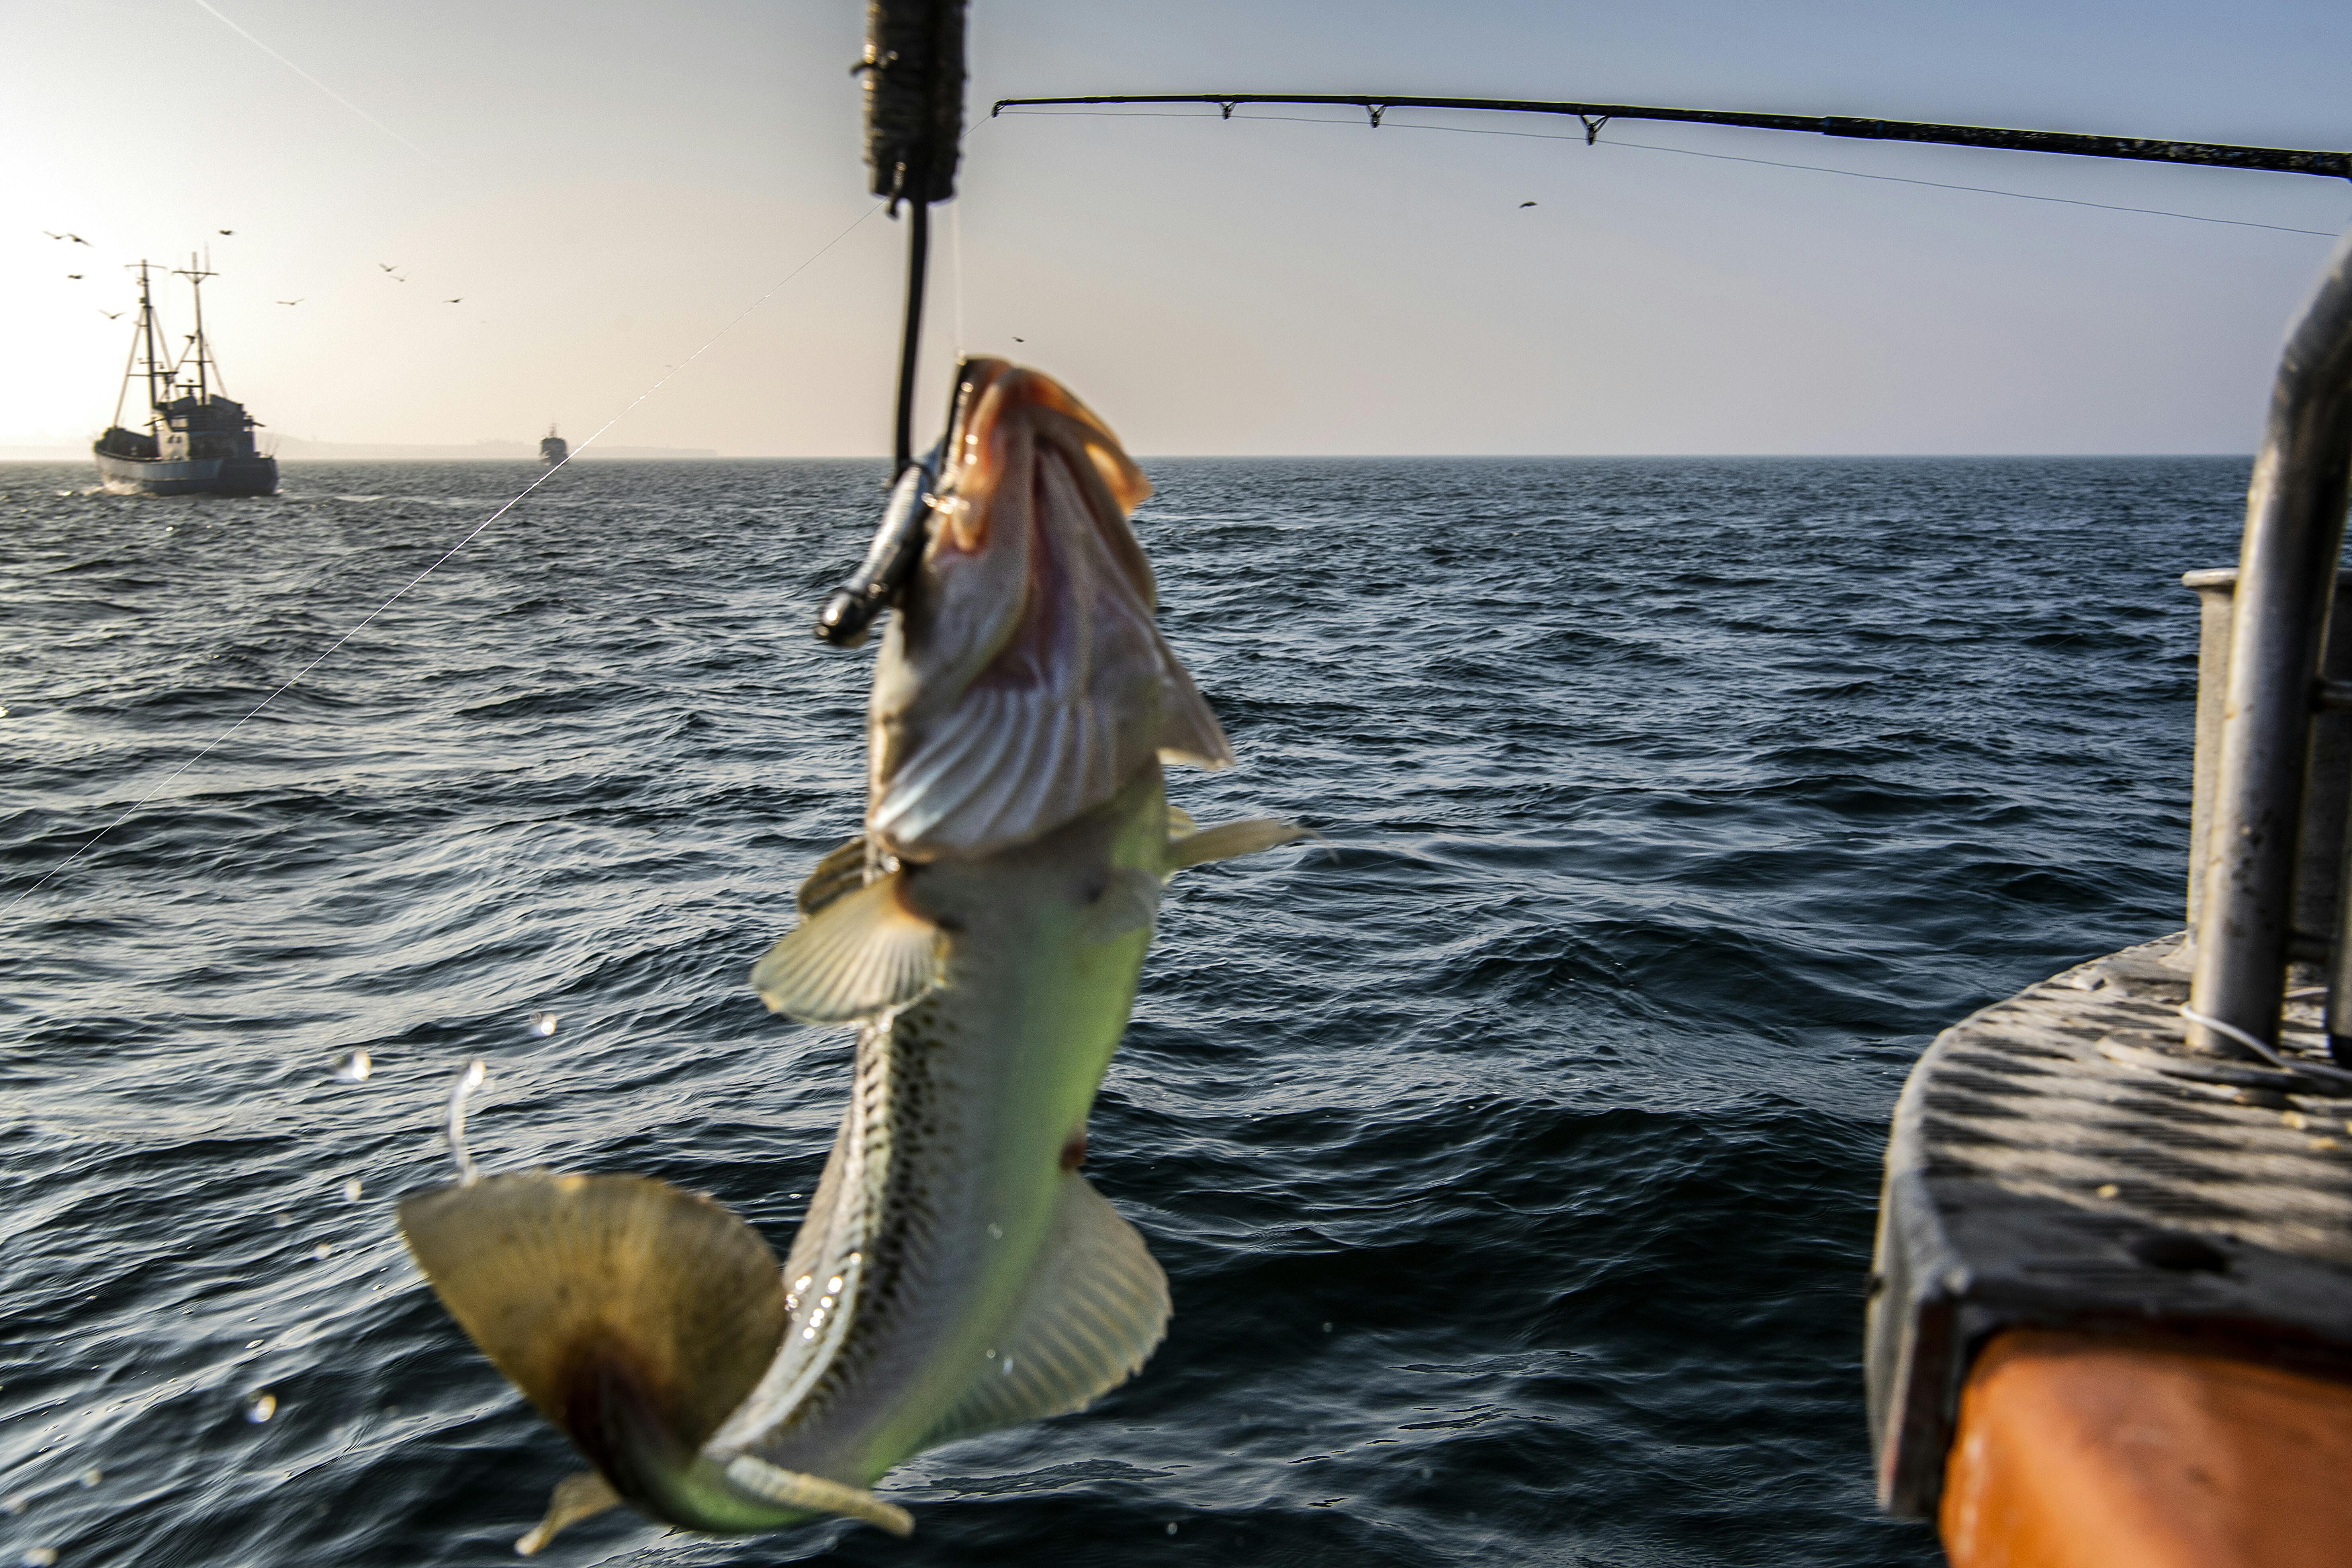 Lystfiskere på Øresund. Lystfisker. Torsk bliver fanget.